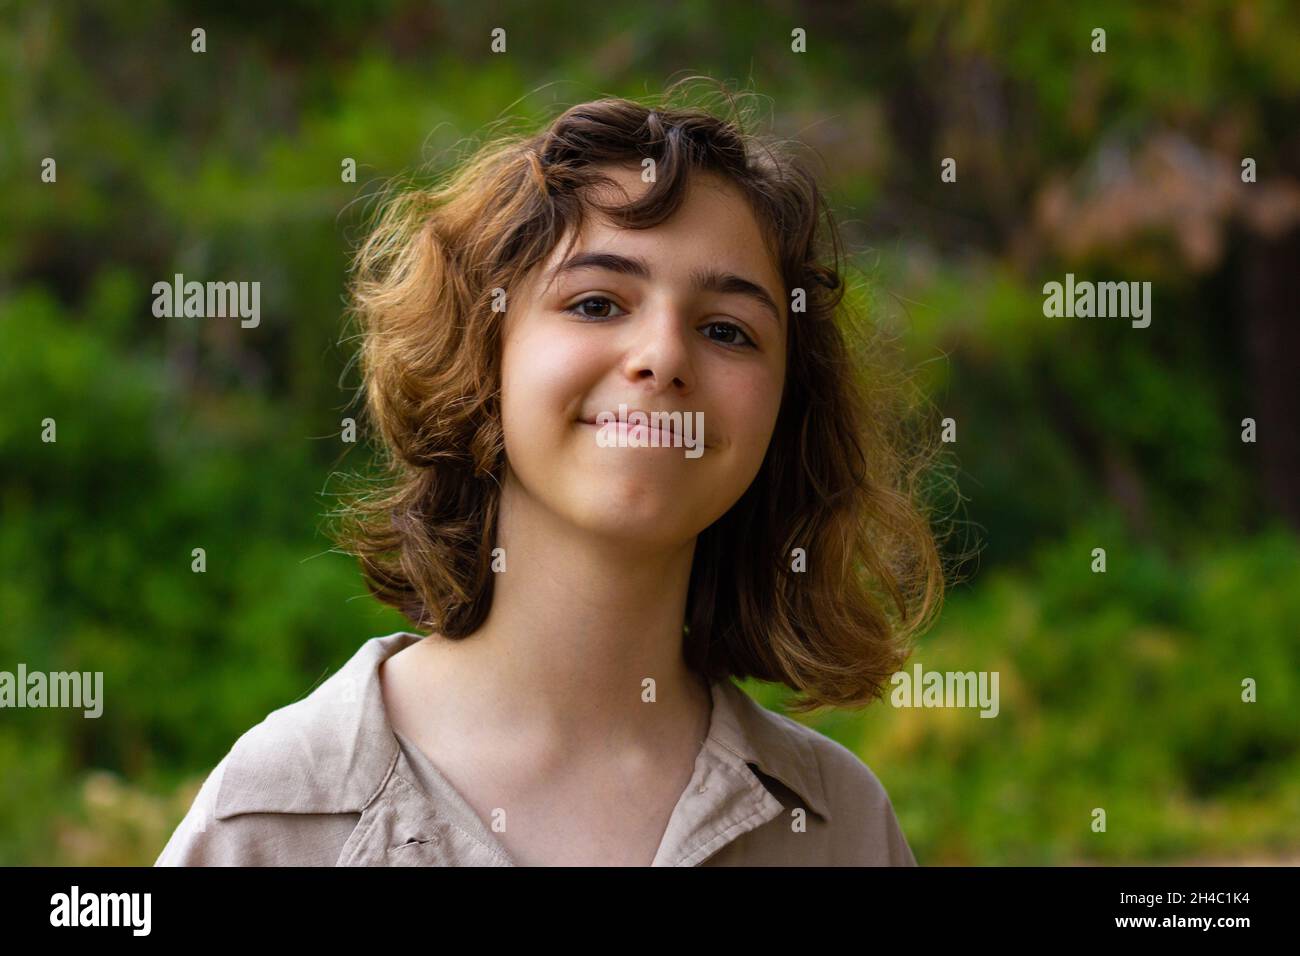 Une jeune fille adorable souriant à l'appareil photo.Jeune fille dans la forêt verte Banque D'Images